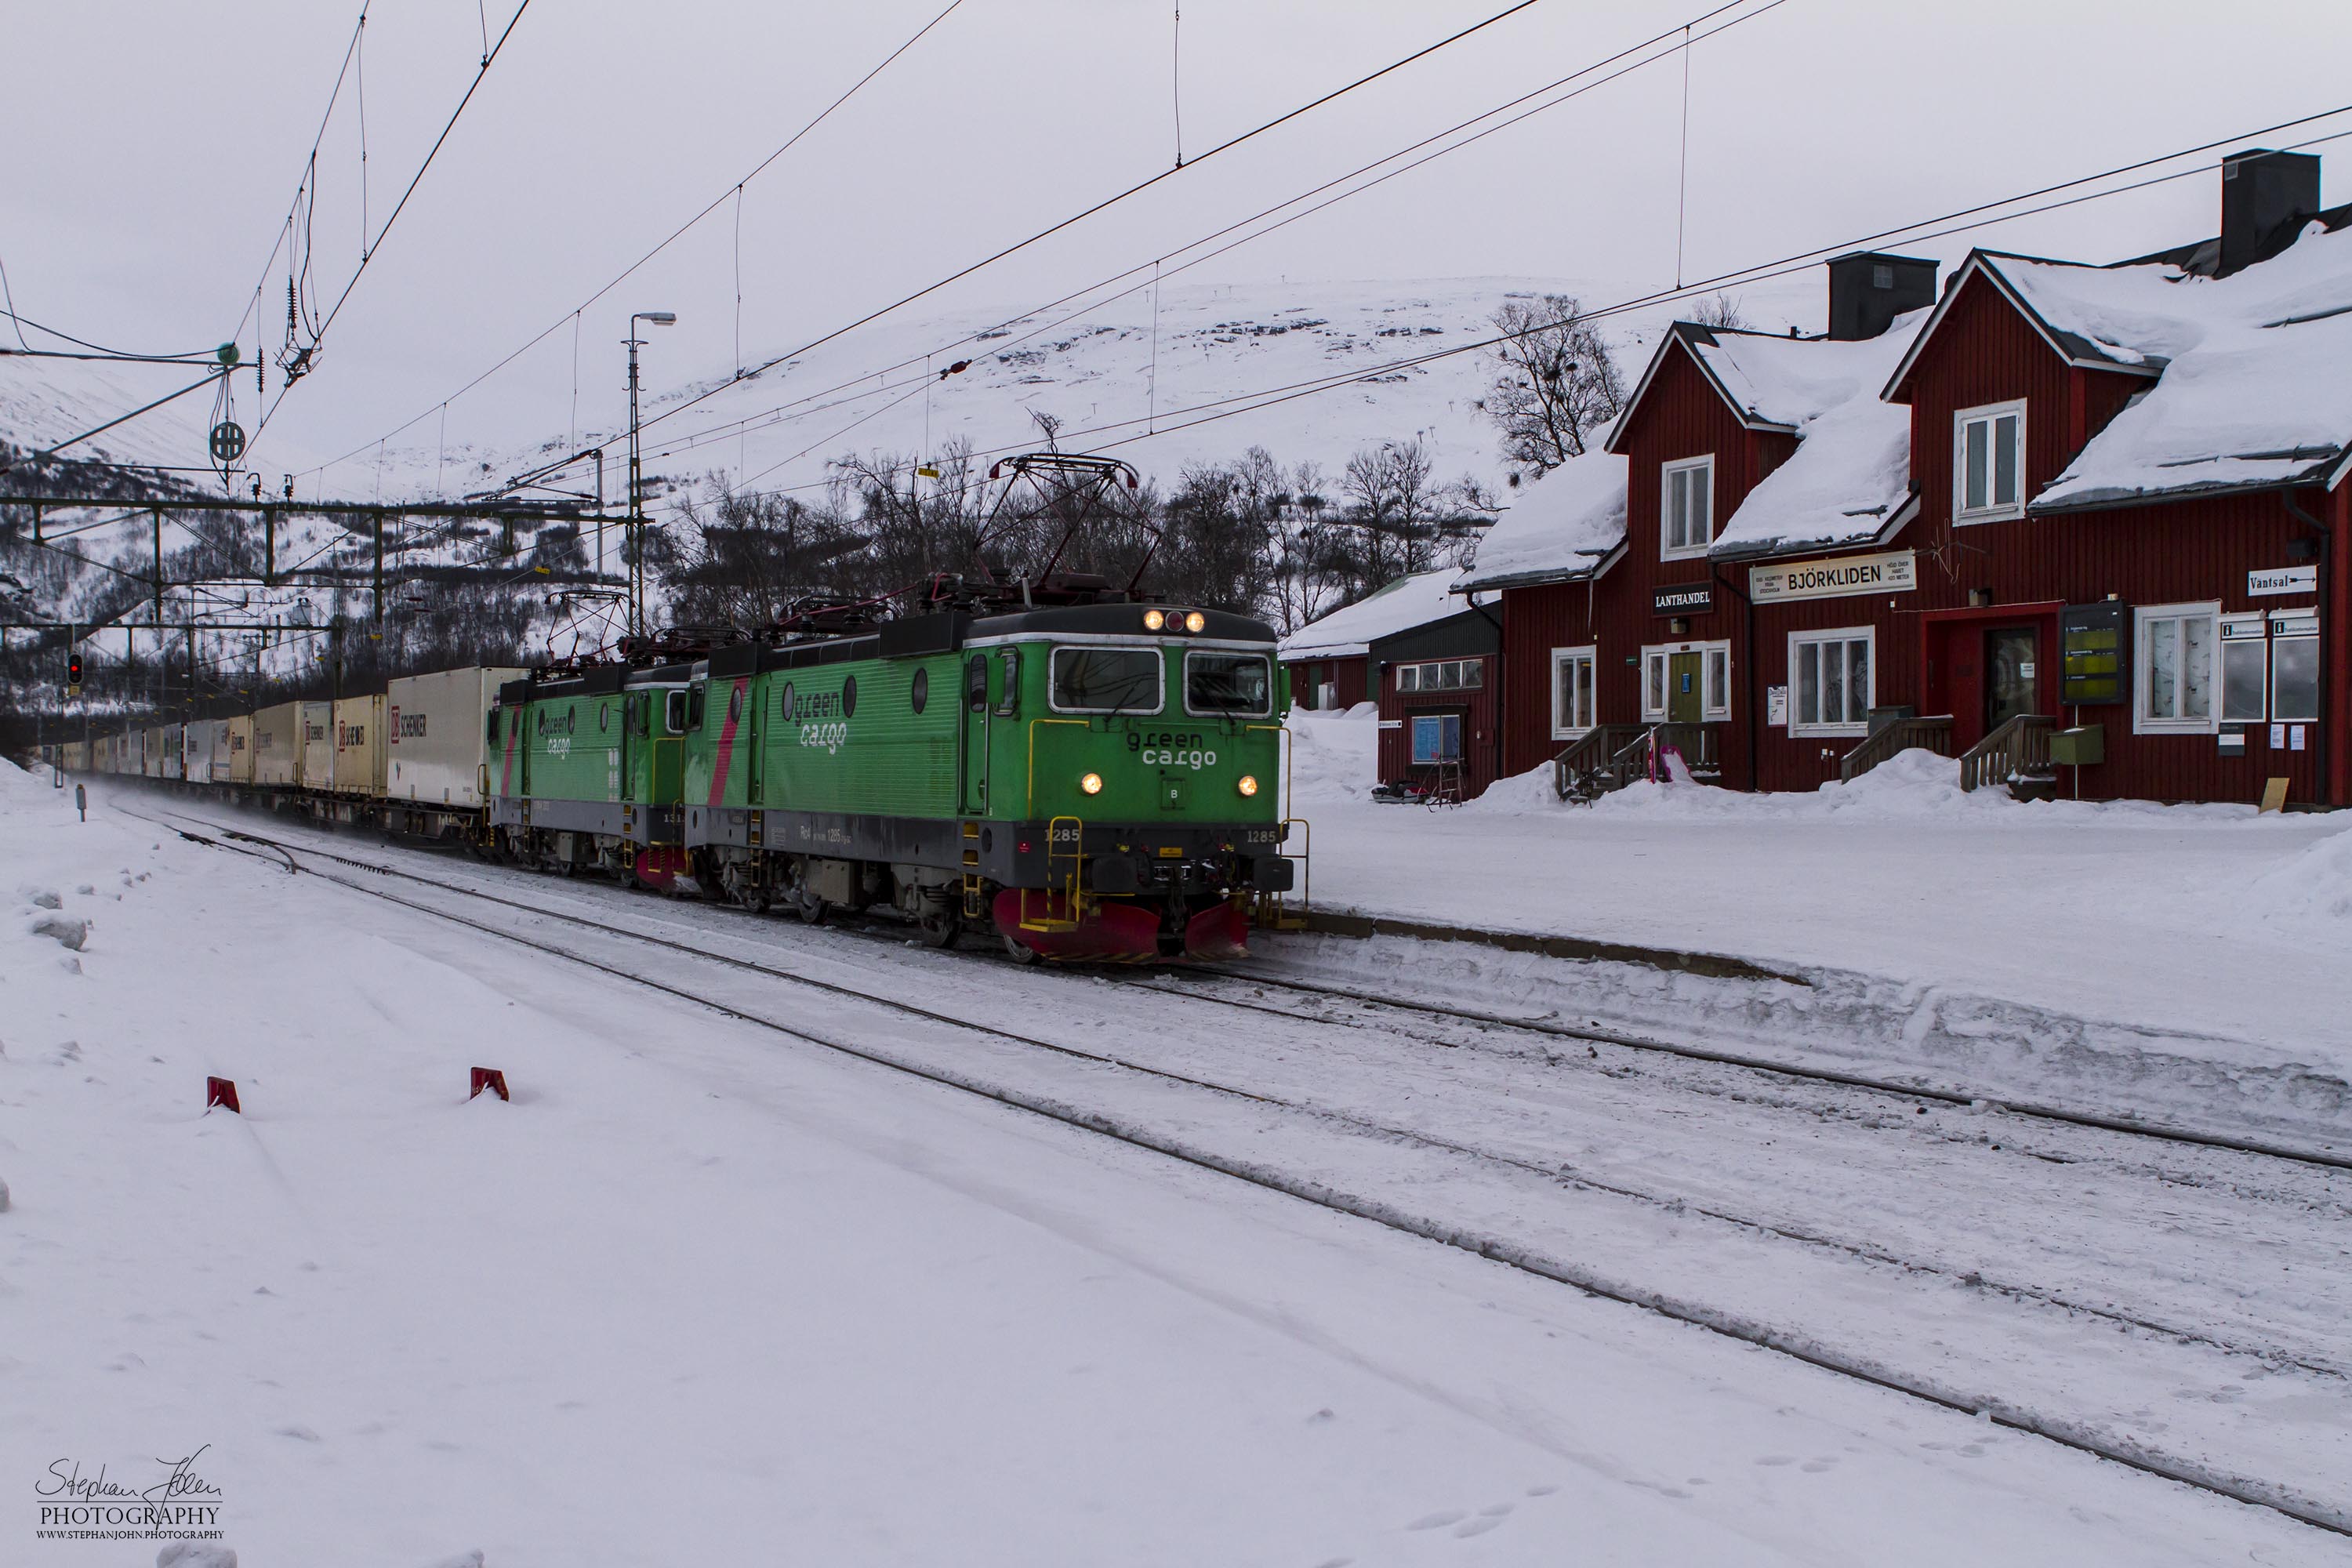 Containerzug 4006 von DB Schenker am 17.03.2013 auf dem Weg nach Narvik in der Durchfahrt durch den Bahnhof Björkliden.